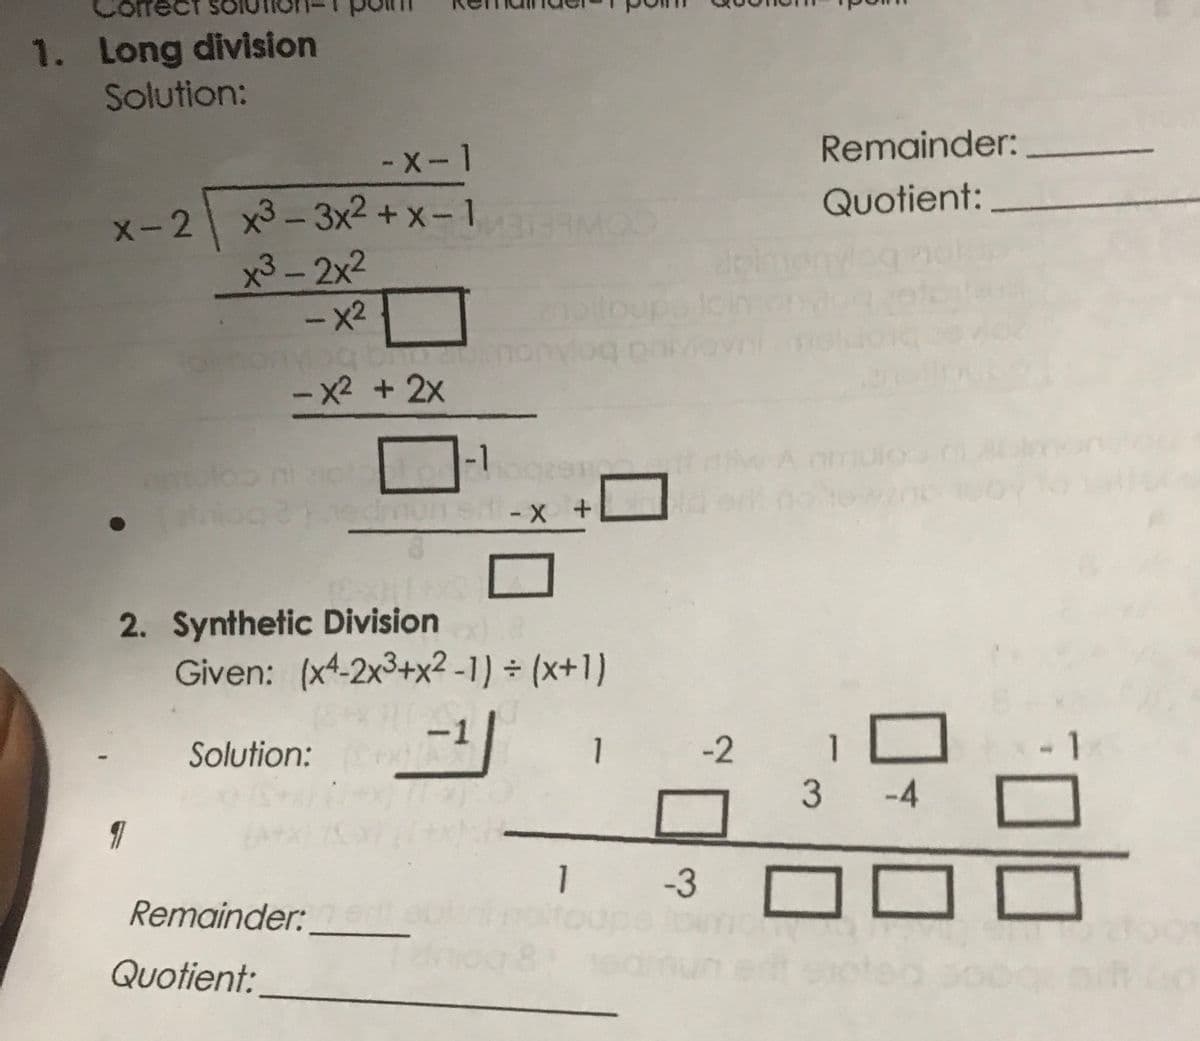 1. Long division
Solution:
- X- 1
Remainder:
Quotient:
x-2 x3-3x2 + x-1
x3-2x2
- x2
- x2 + 2x
-1
A amul
2. Synthetic Division
Given: (x4-2x3+x² -1) ÷ (x+1)
Solution:
1
-2
1
3 -4
1.
1 -3
Remainder:
pe
Quotient:
